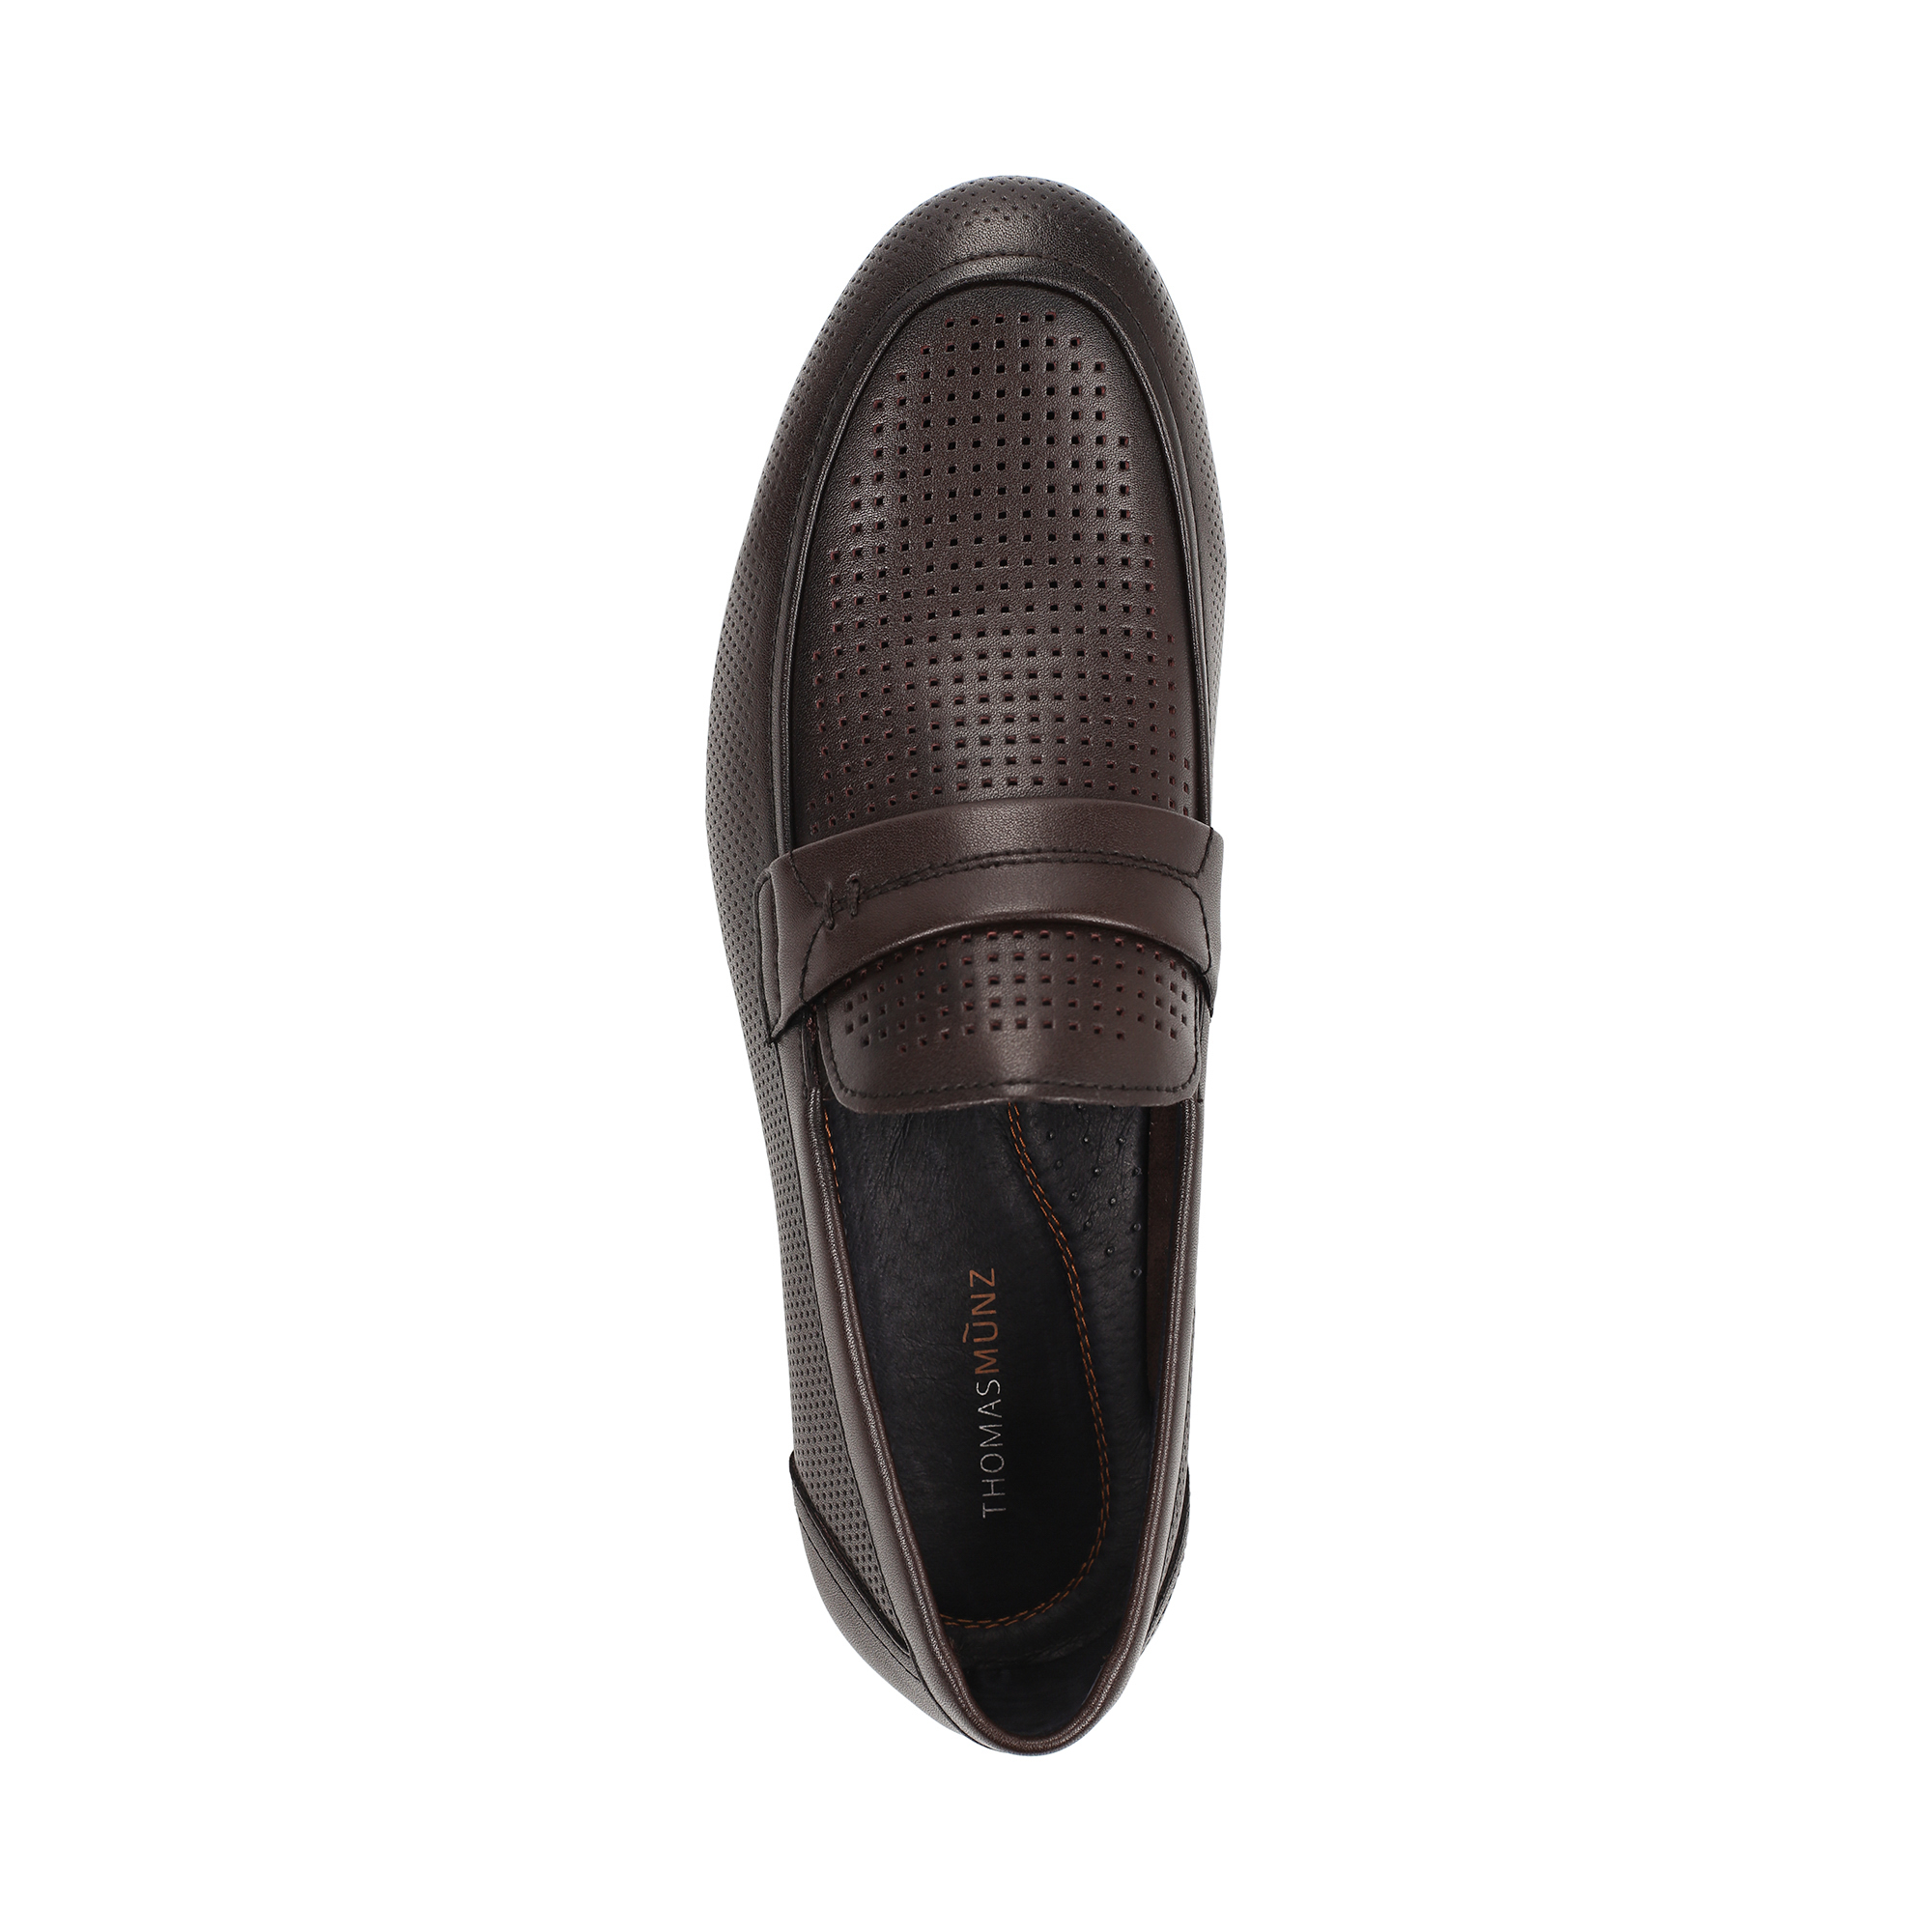 Туфли/полуботинки Thomas Munz 058-115A-1609, цвет темно-коричневый, размер 41 - фото 5